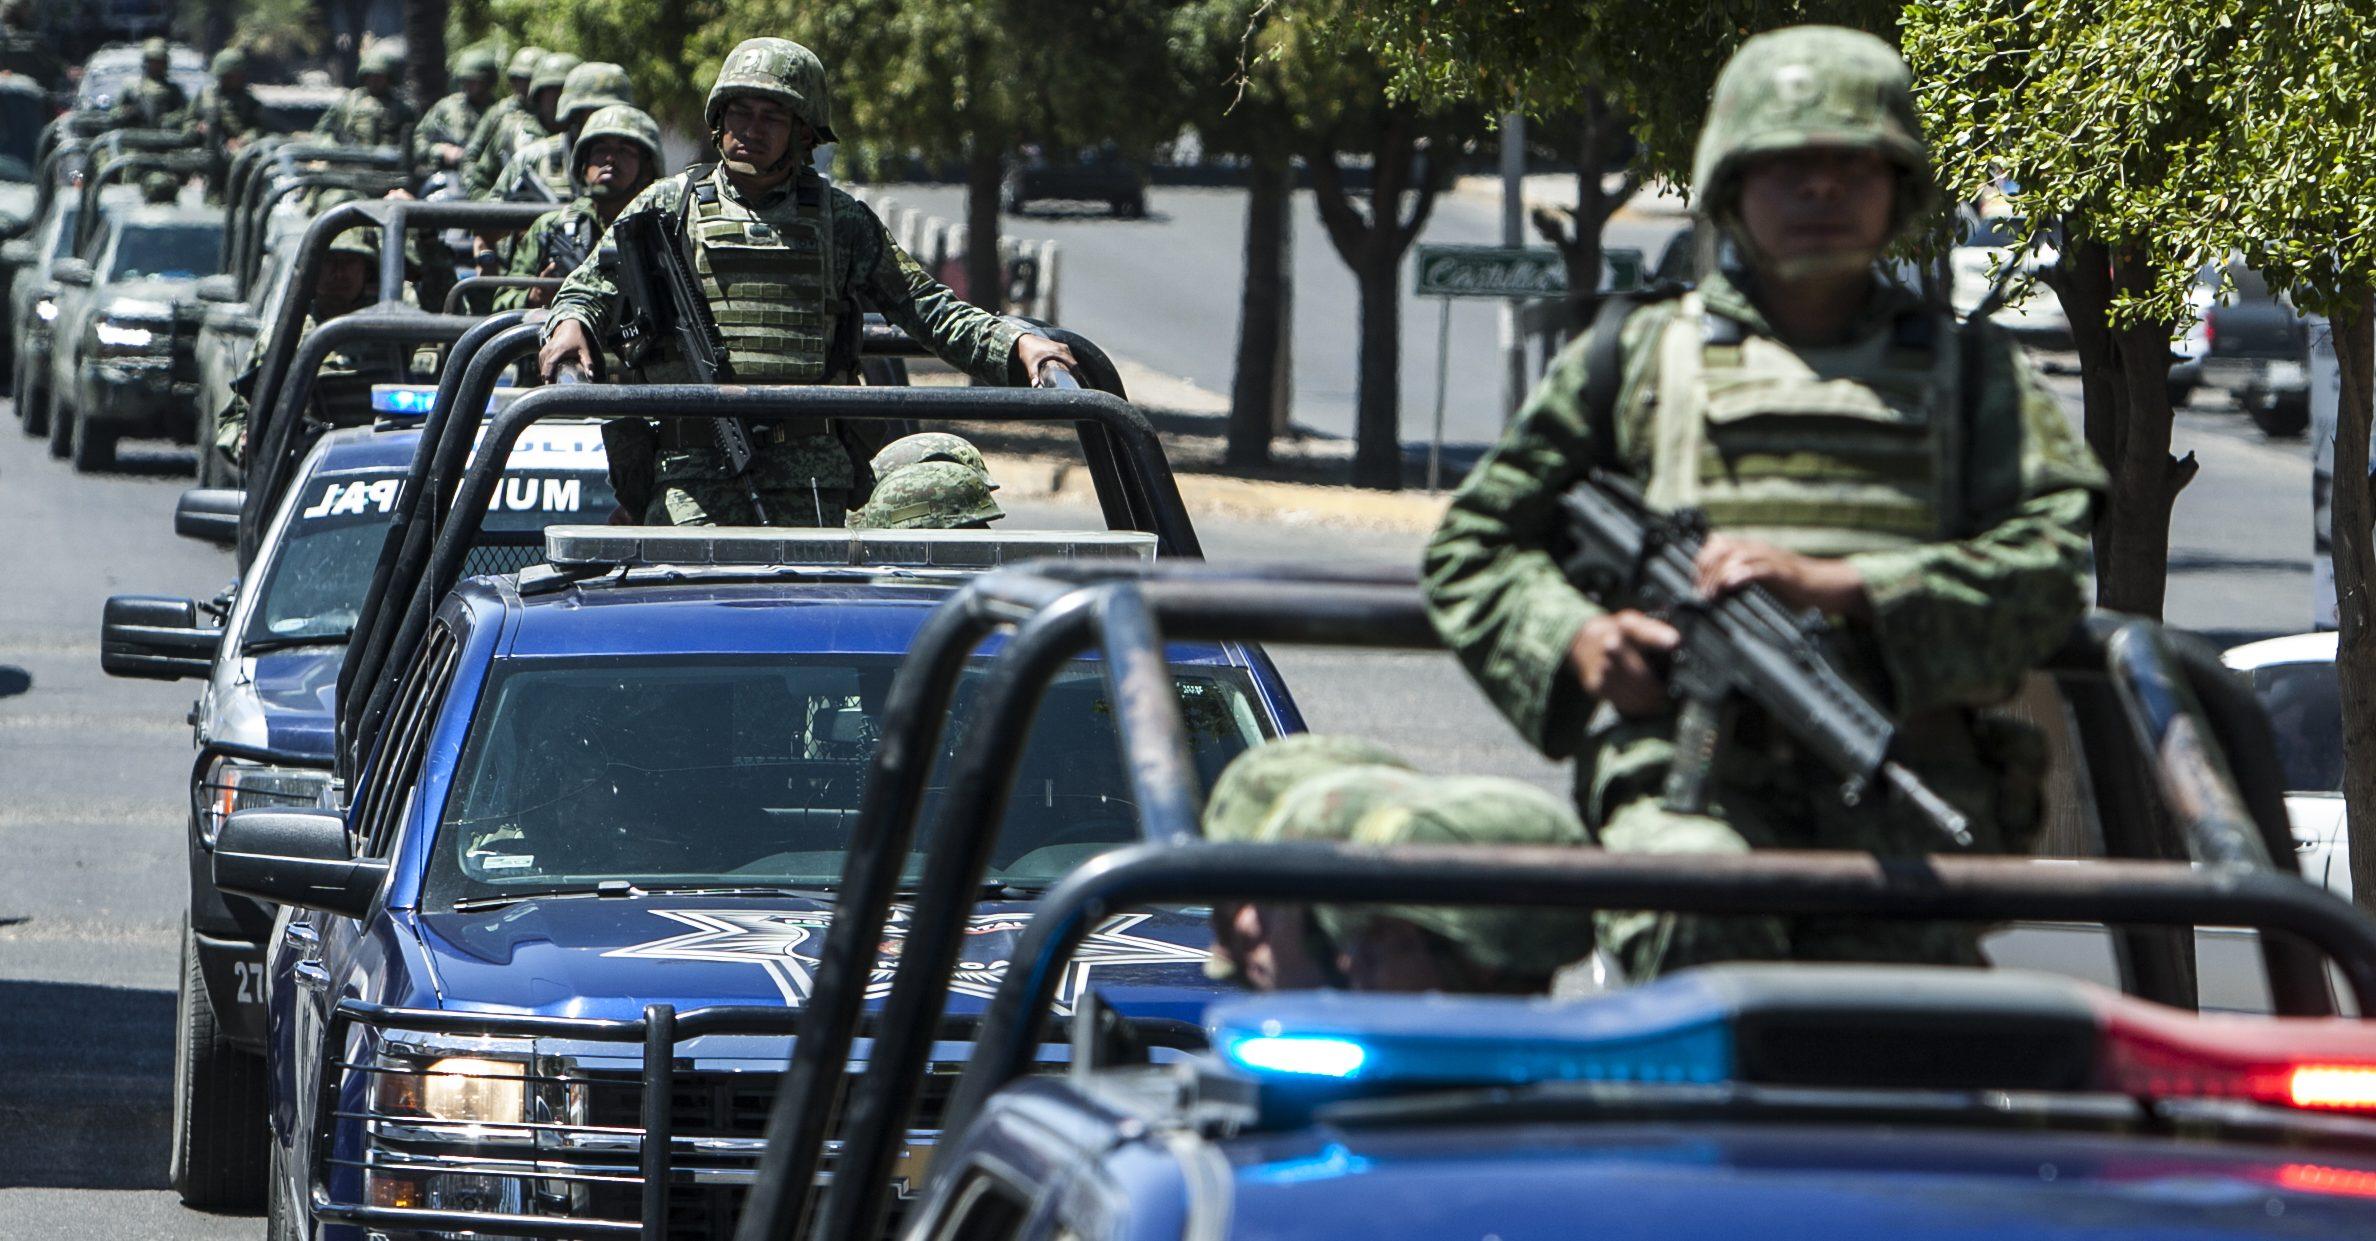 Guardia Nacional continuará estrategia que violó derechos humanos, alertan ONU y ONG